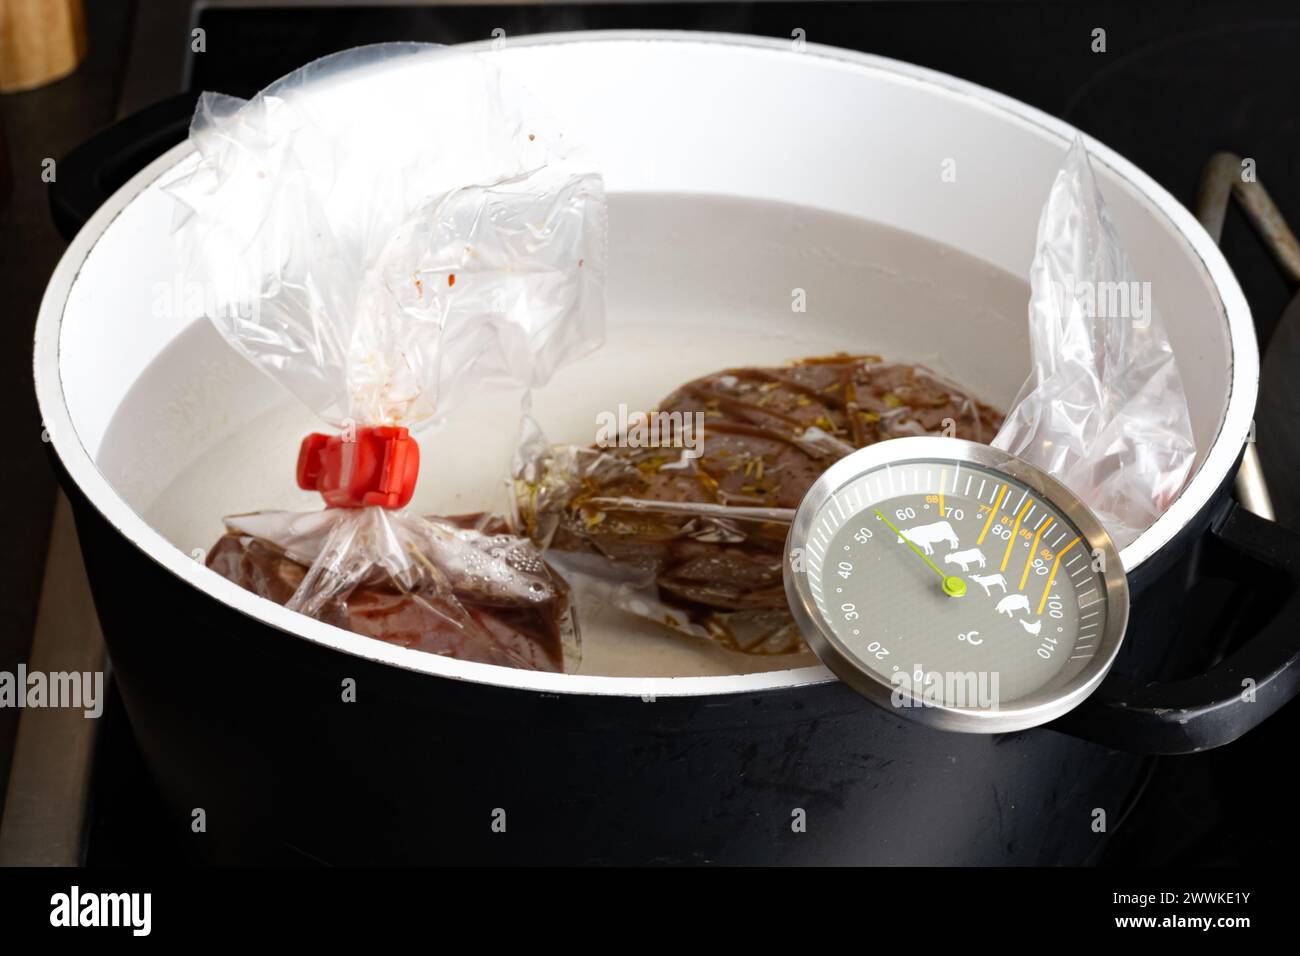 Descrizione: Preparazione di filetto di manzo crudo per bagno sous vide in pentola con termometro su stufa da cucina, fotografato dal lato. Foto Stock